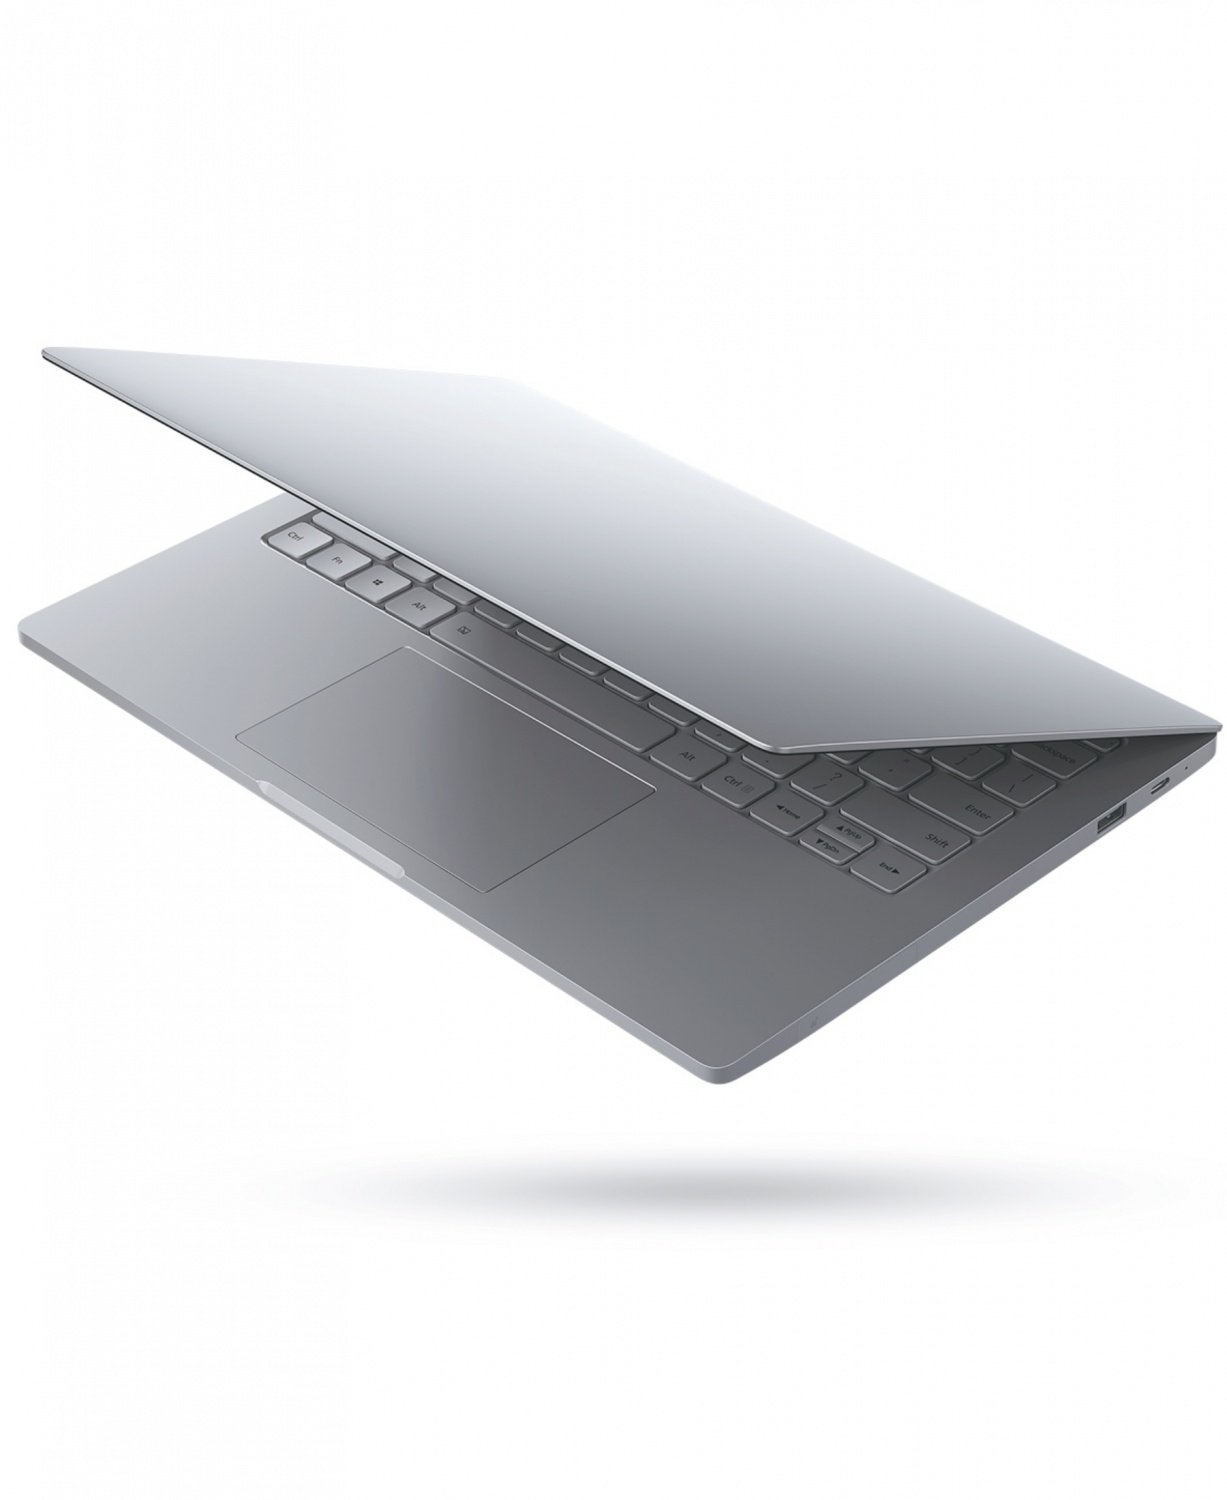 Ноутбук Xiaomi Mi Notebook Air 13 3 Купить